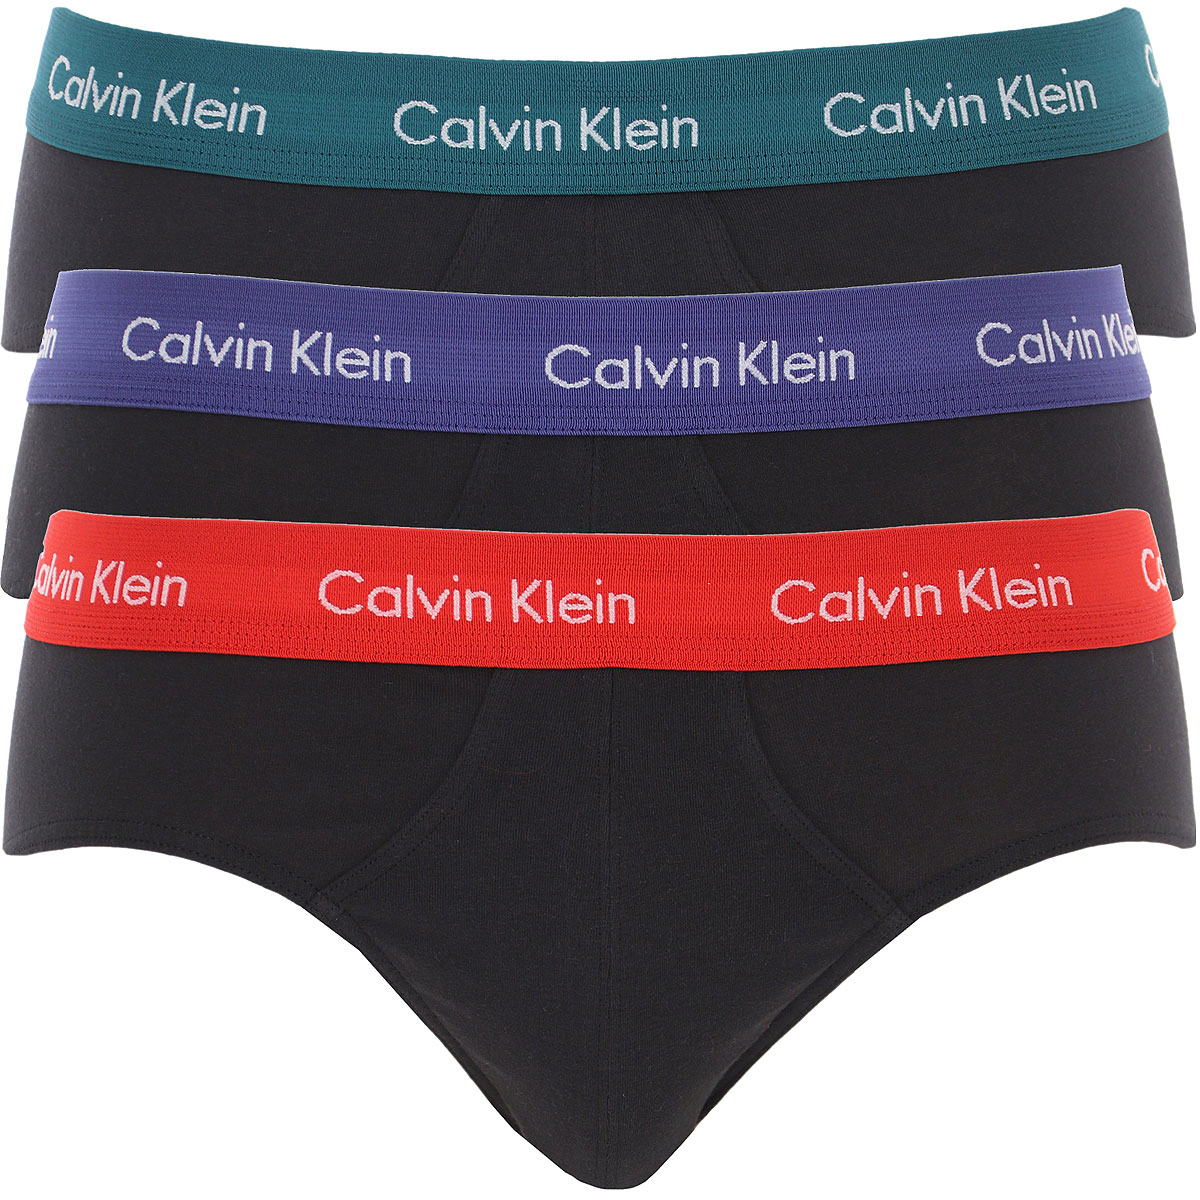 Mens Underwear Calvin Klein, Style code: u2661g-whj-